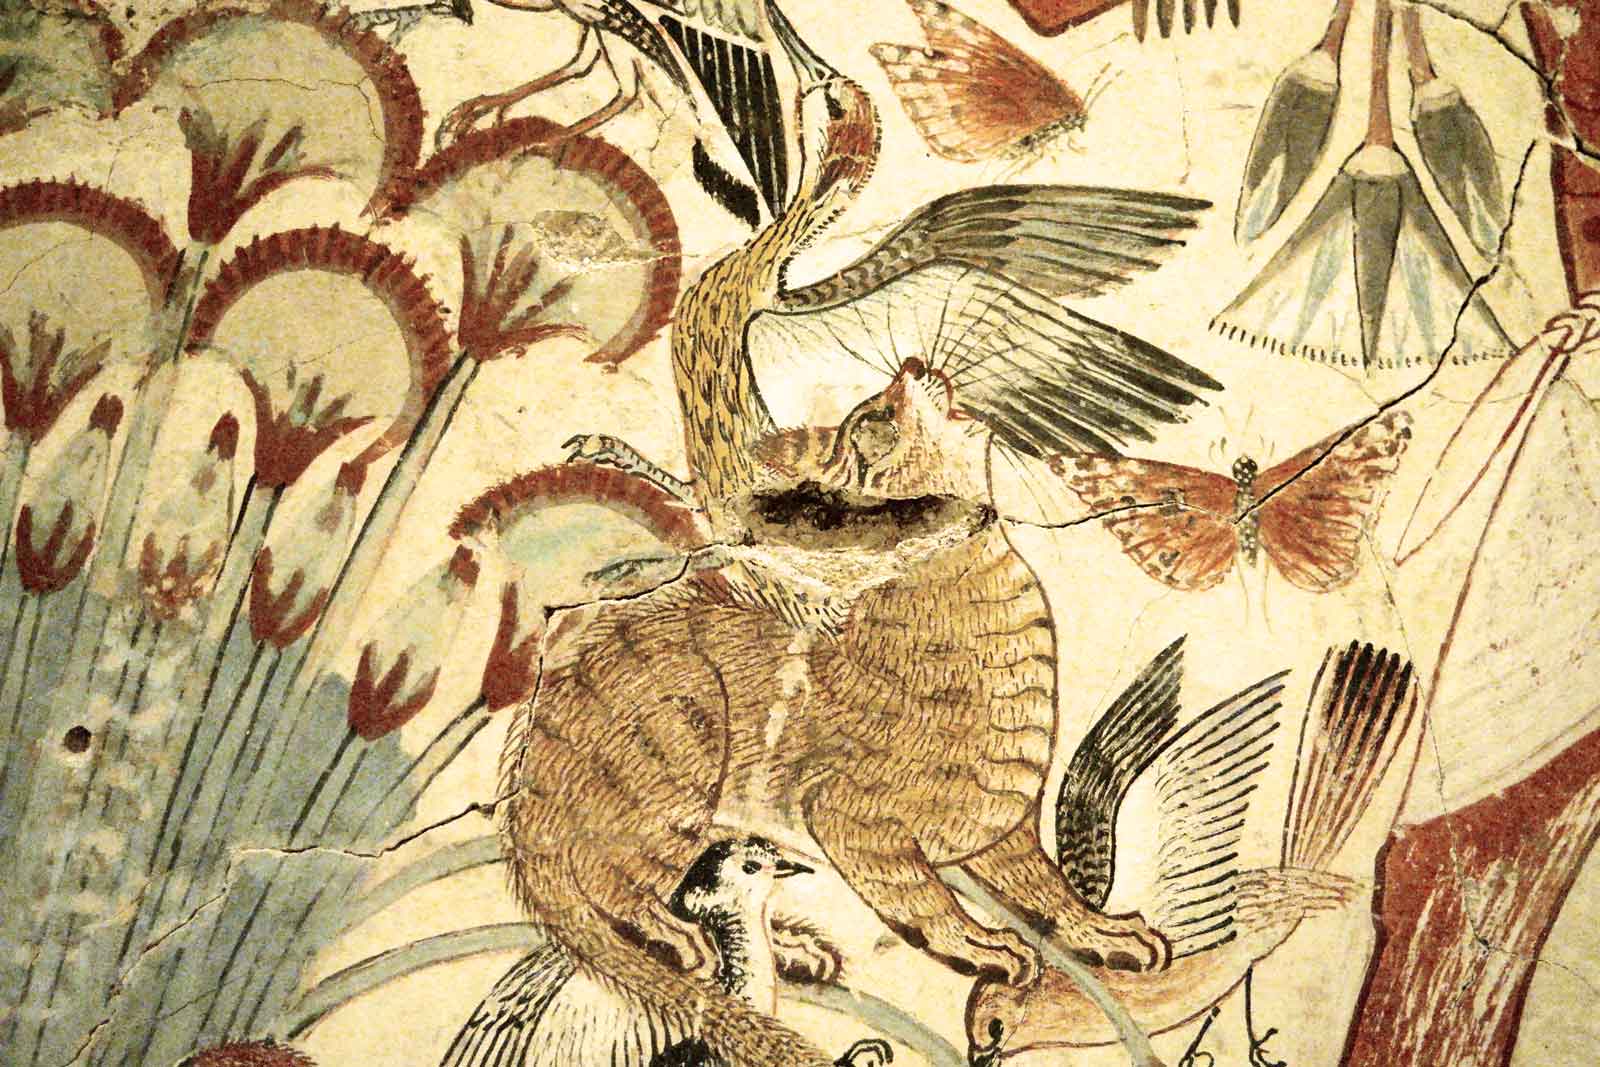 Ausschnitt aus dem Wandbildsegment, das eine Katzengestalt inmitten hoher, schlanker Pflanzen zeigt, die mit ihrem Maul und allen vier Pfoten mehrere Vögel fängt.